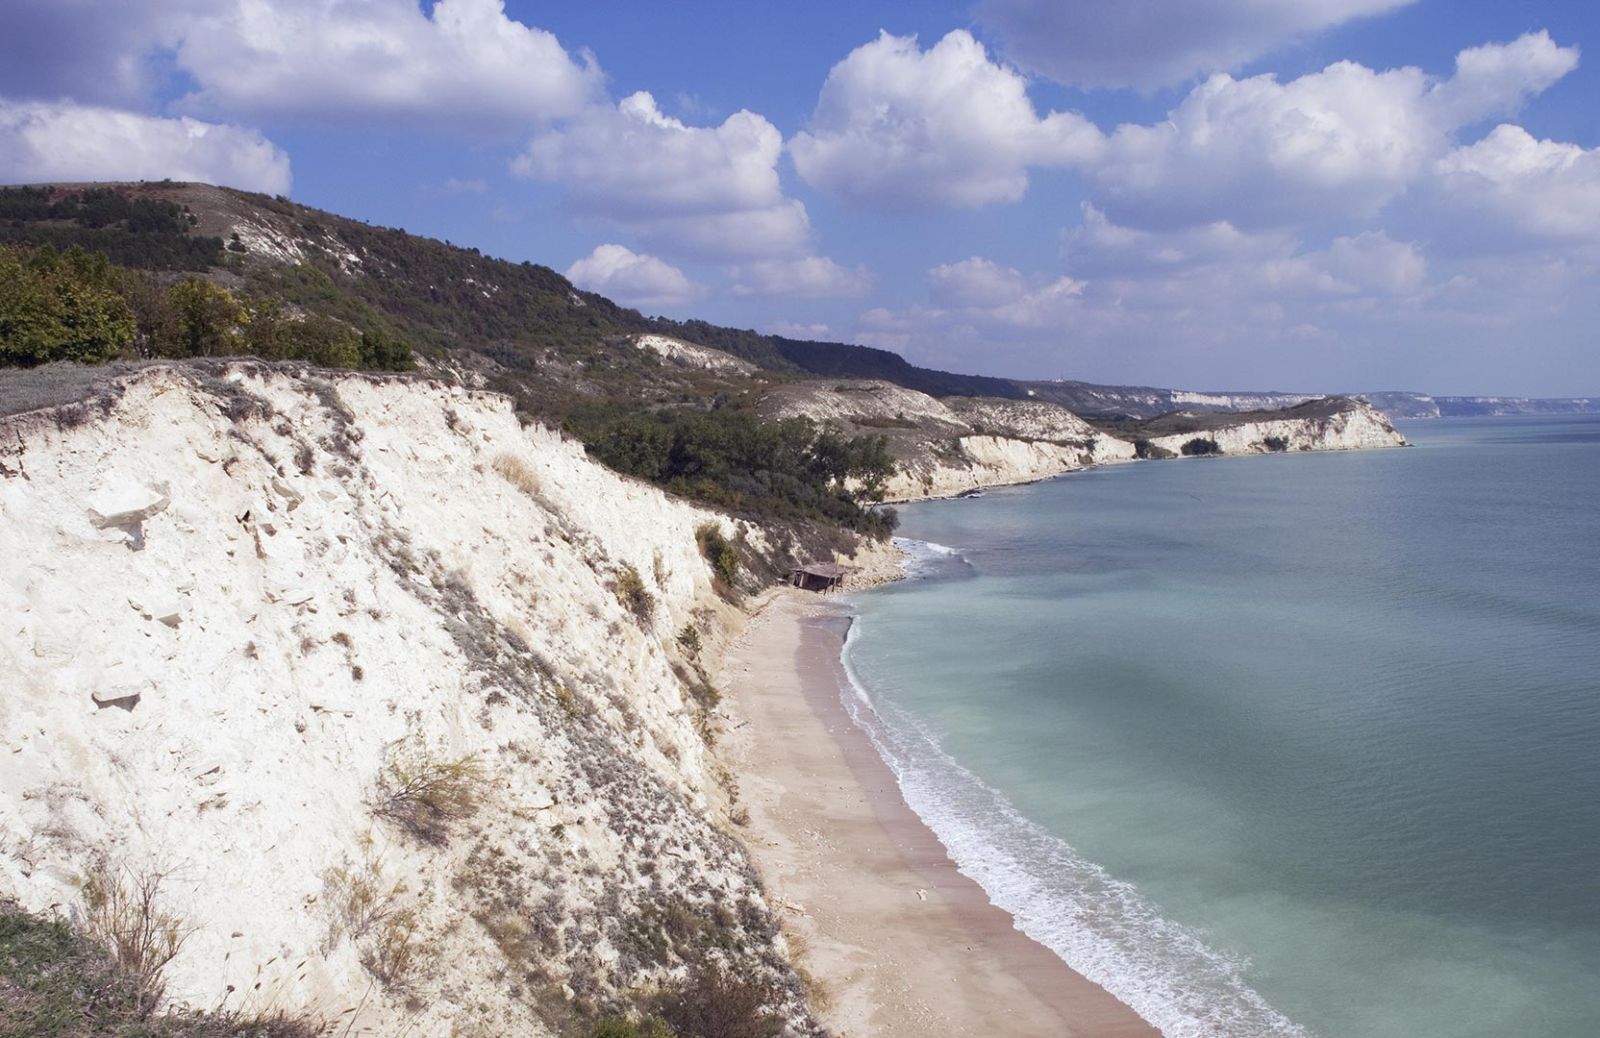 Vacanze al mare low cost in Bulgaria: spiagge meravigliose a prezzi contenuti